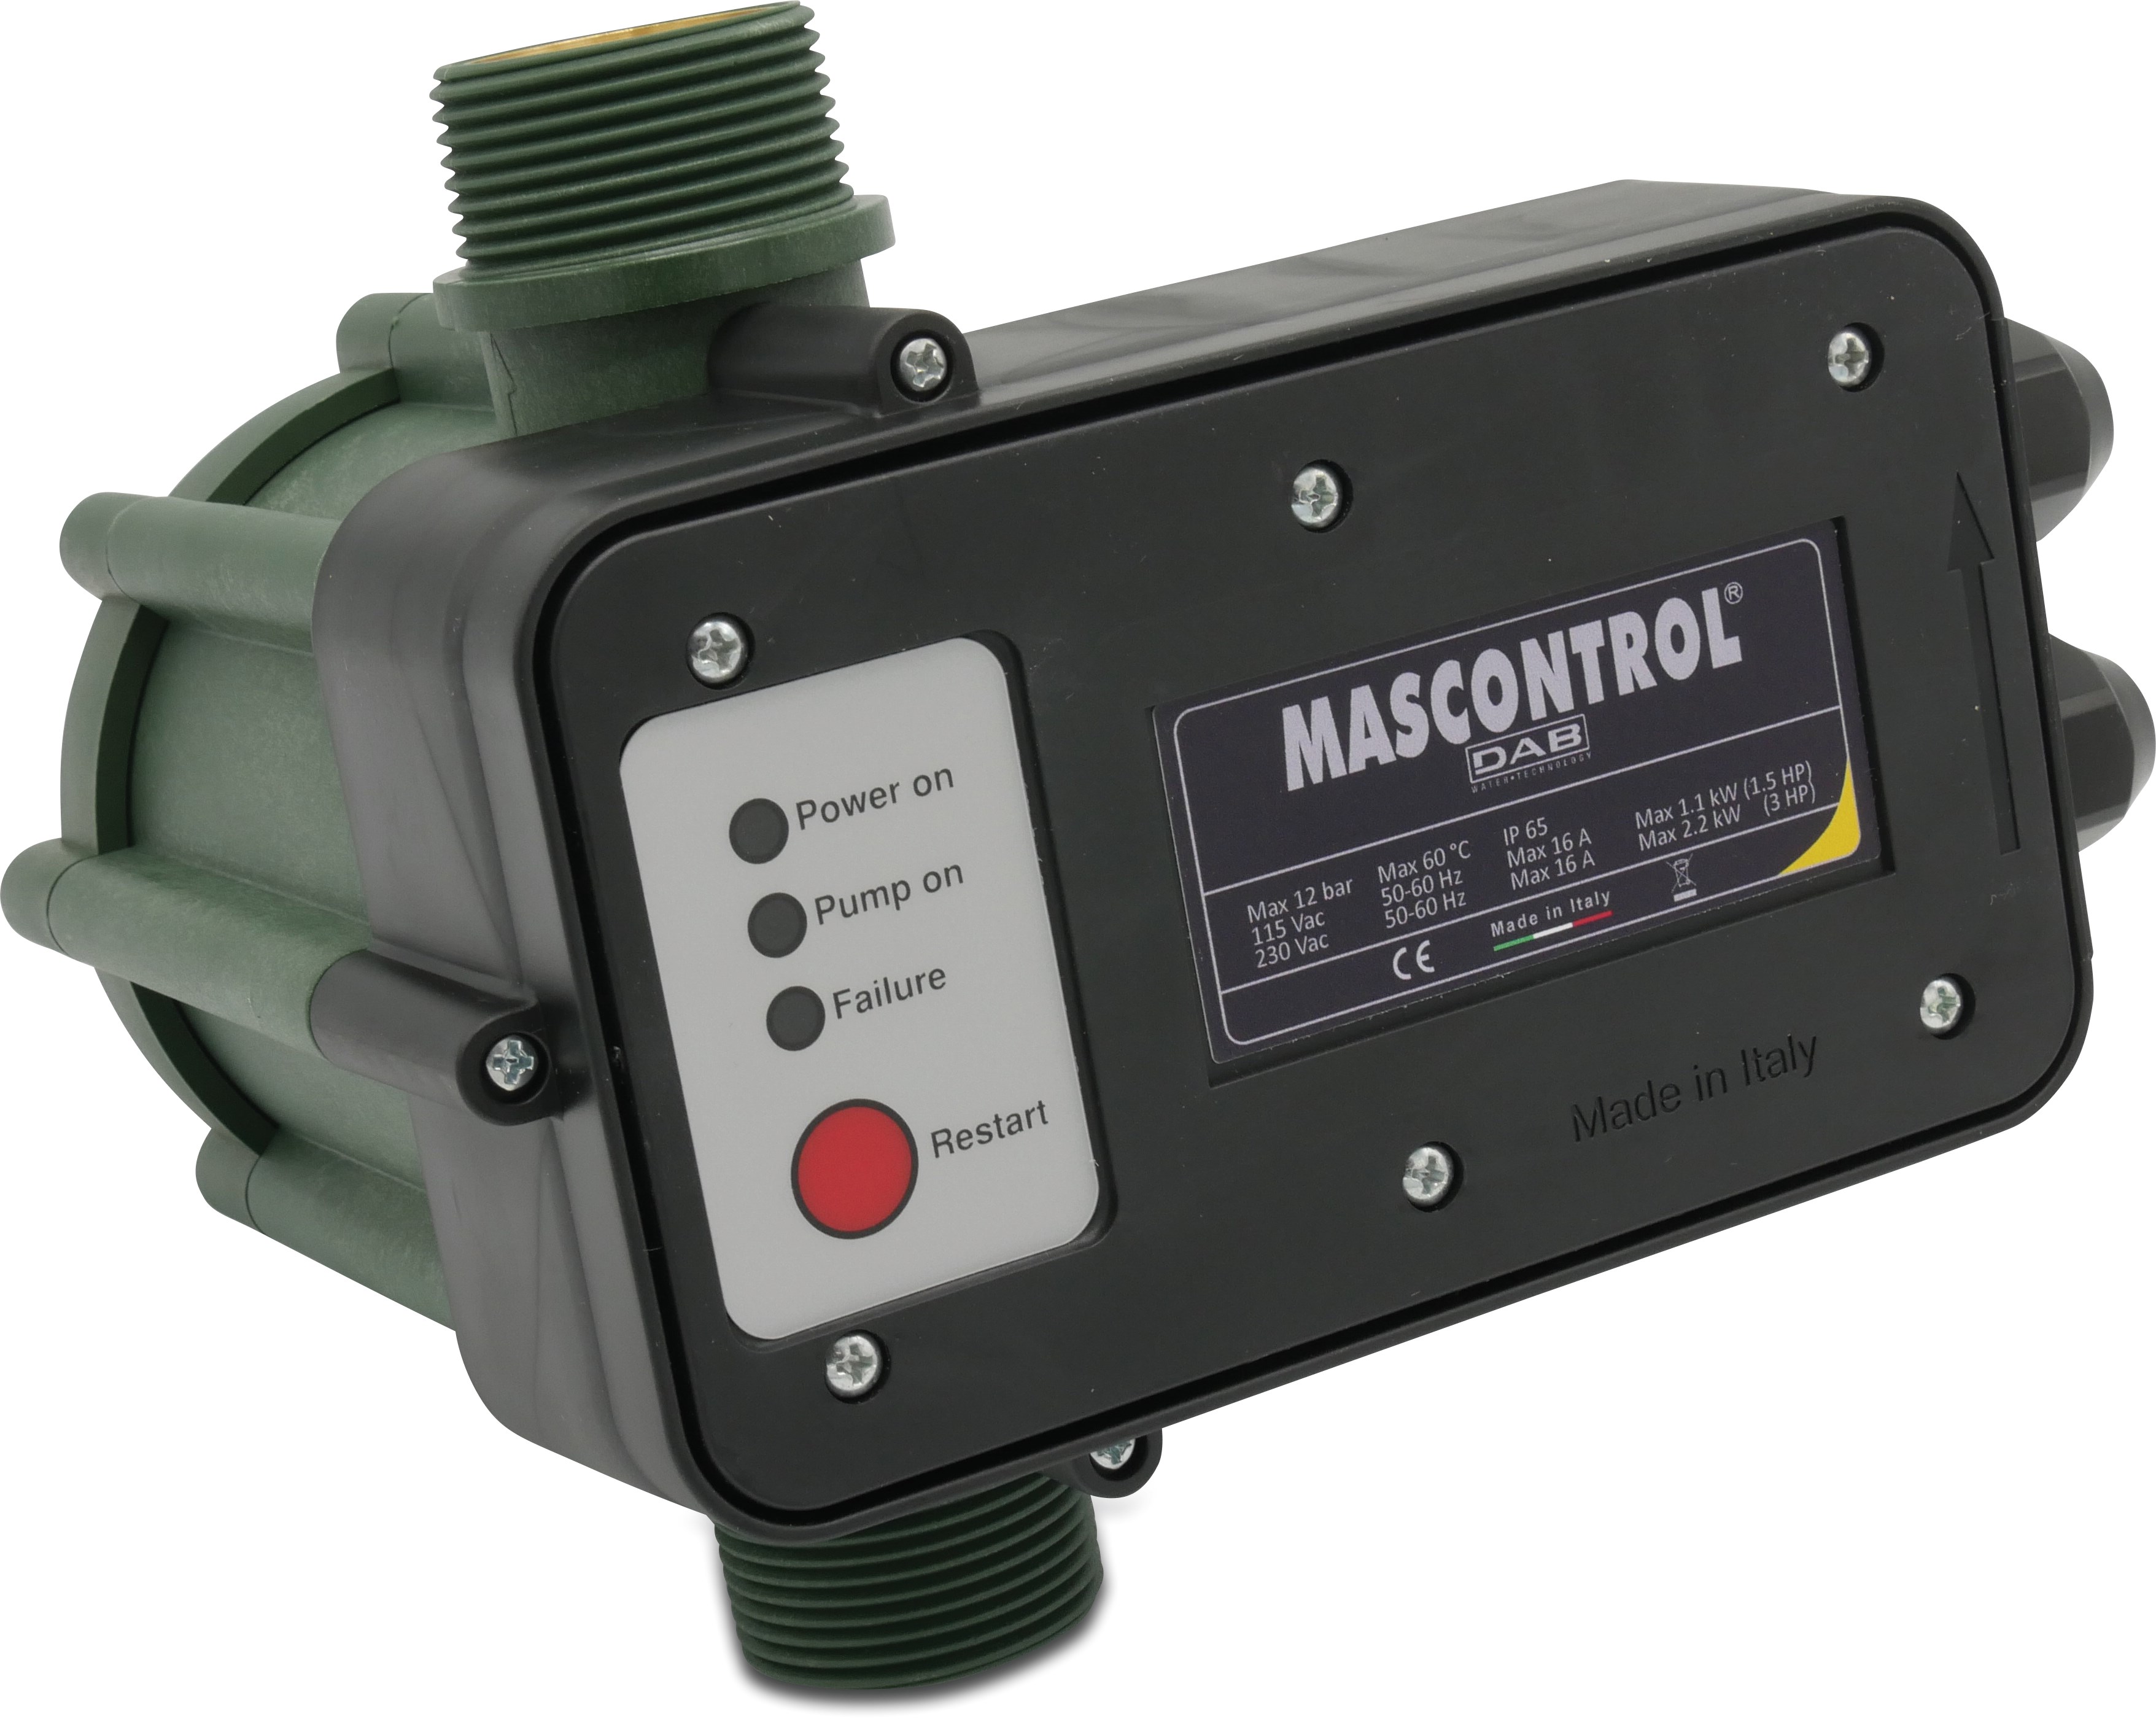 DAB Press control mit Trockenlaufschutz 1 1/4" Außengewinde 230VAC Grün type Mas Control ohne Kabel